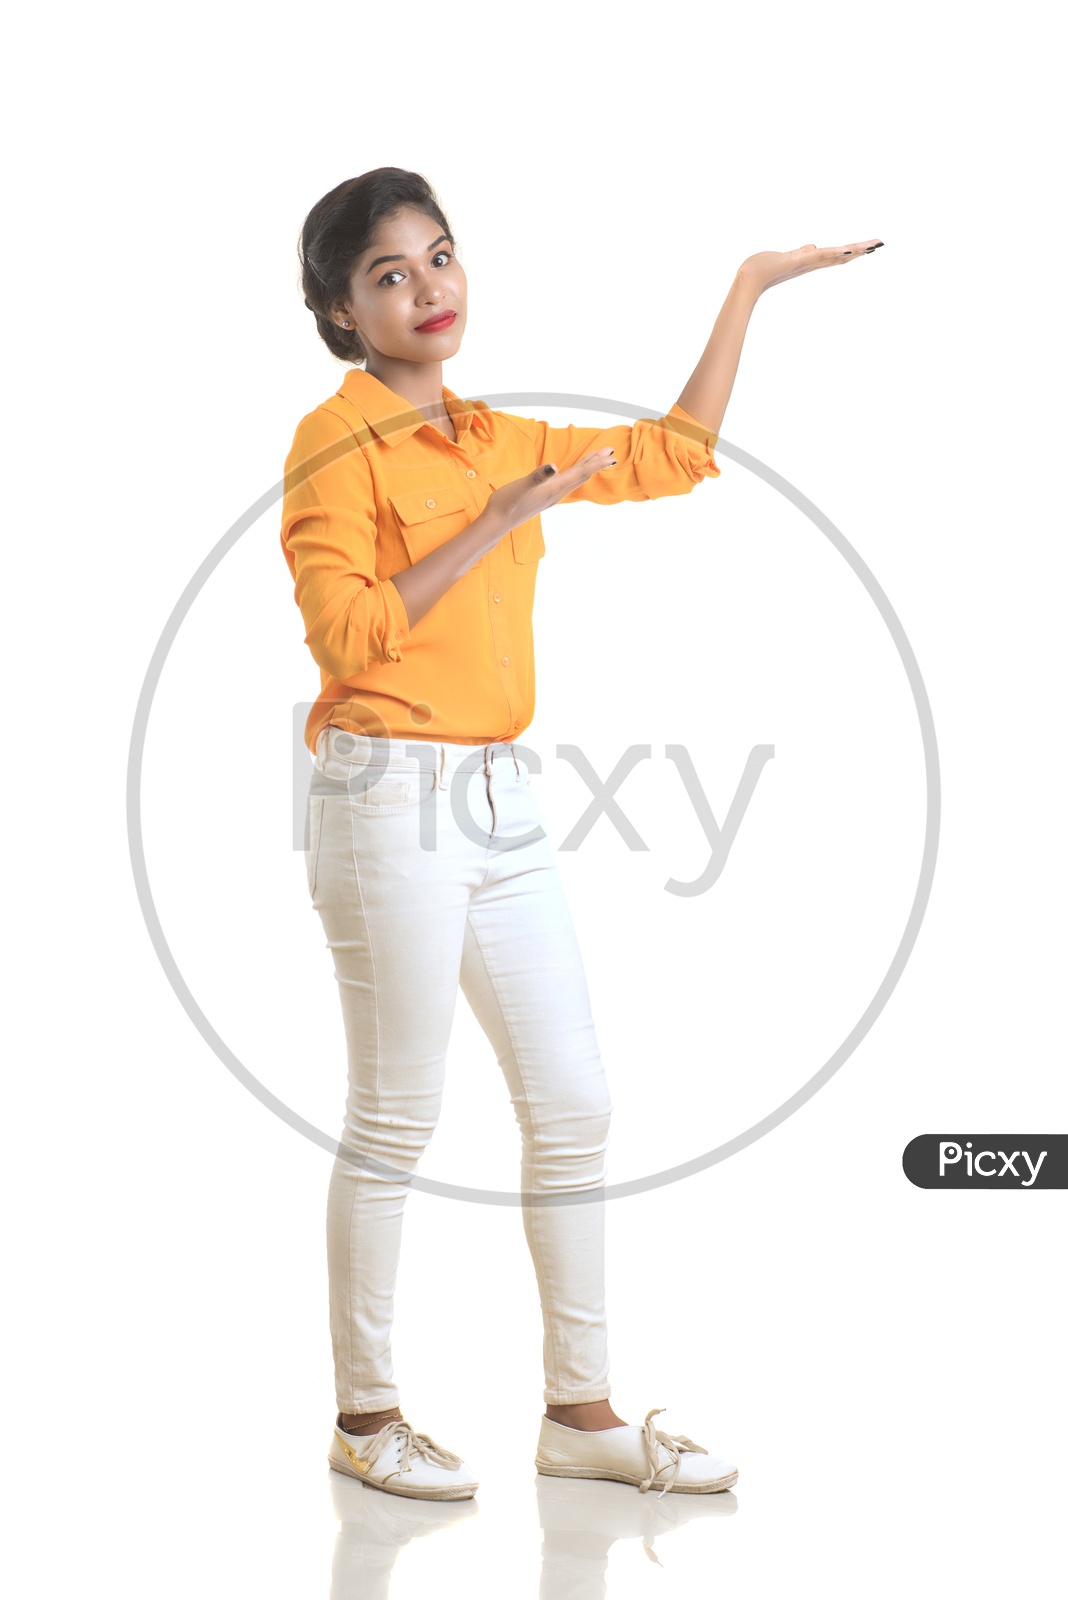 Indian woman wearing orange shirt and white pant